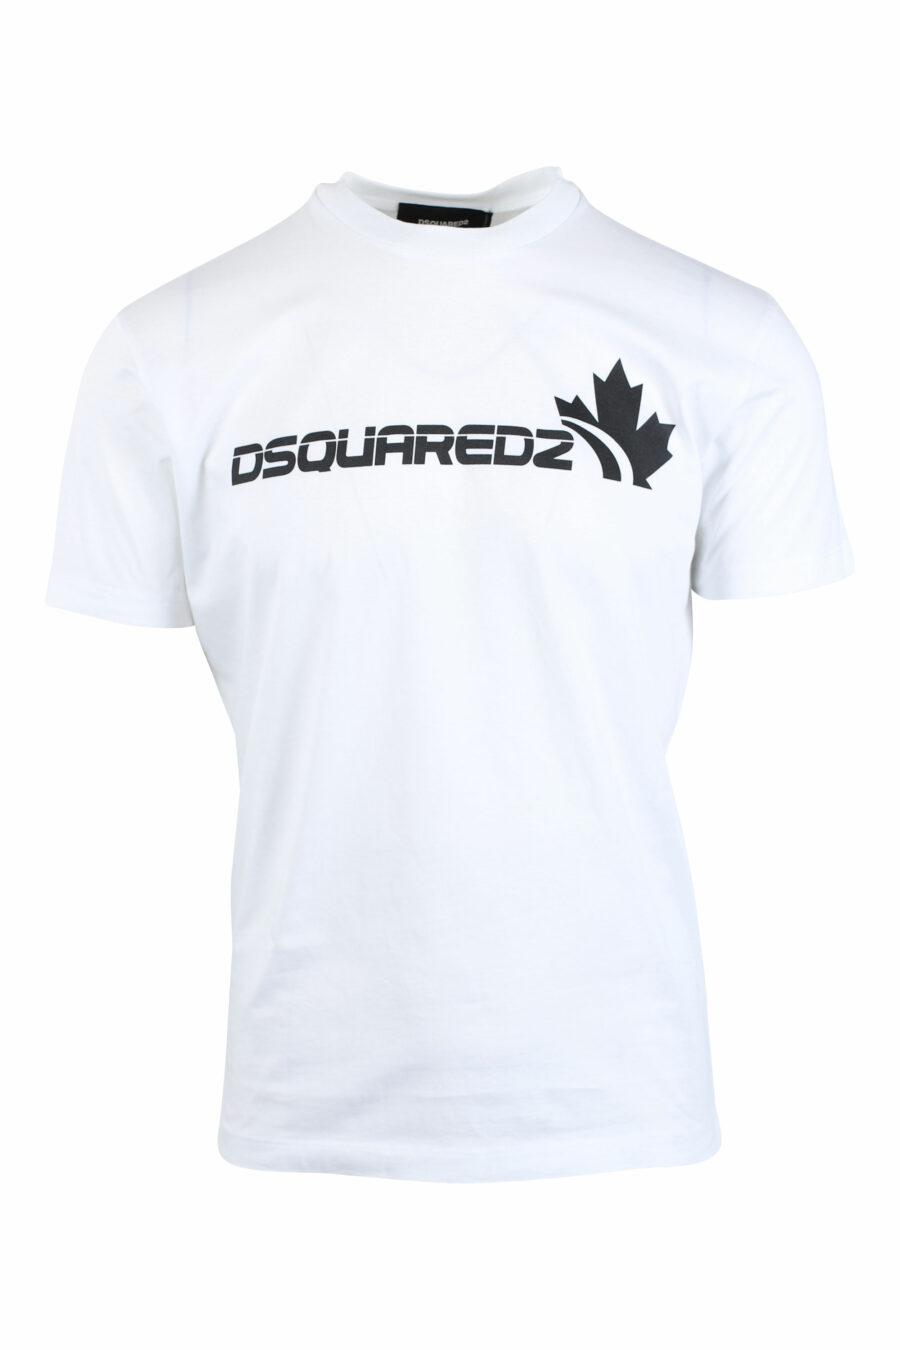 Weißes T-Shirt mit Maxilogo und Blatt - IMG 2628